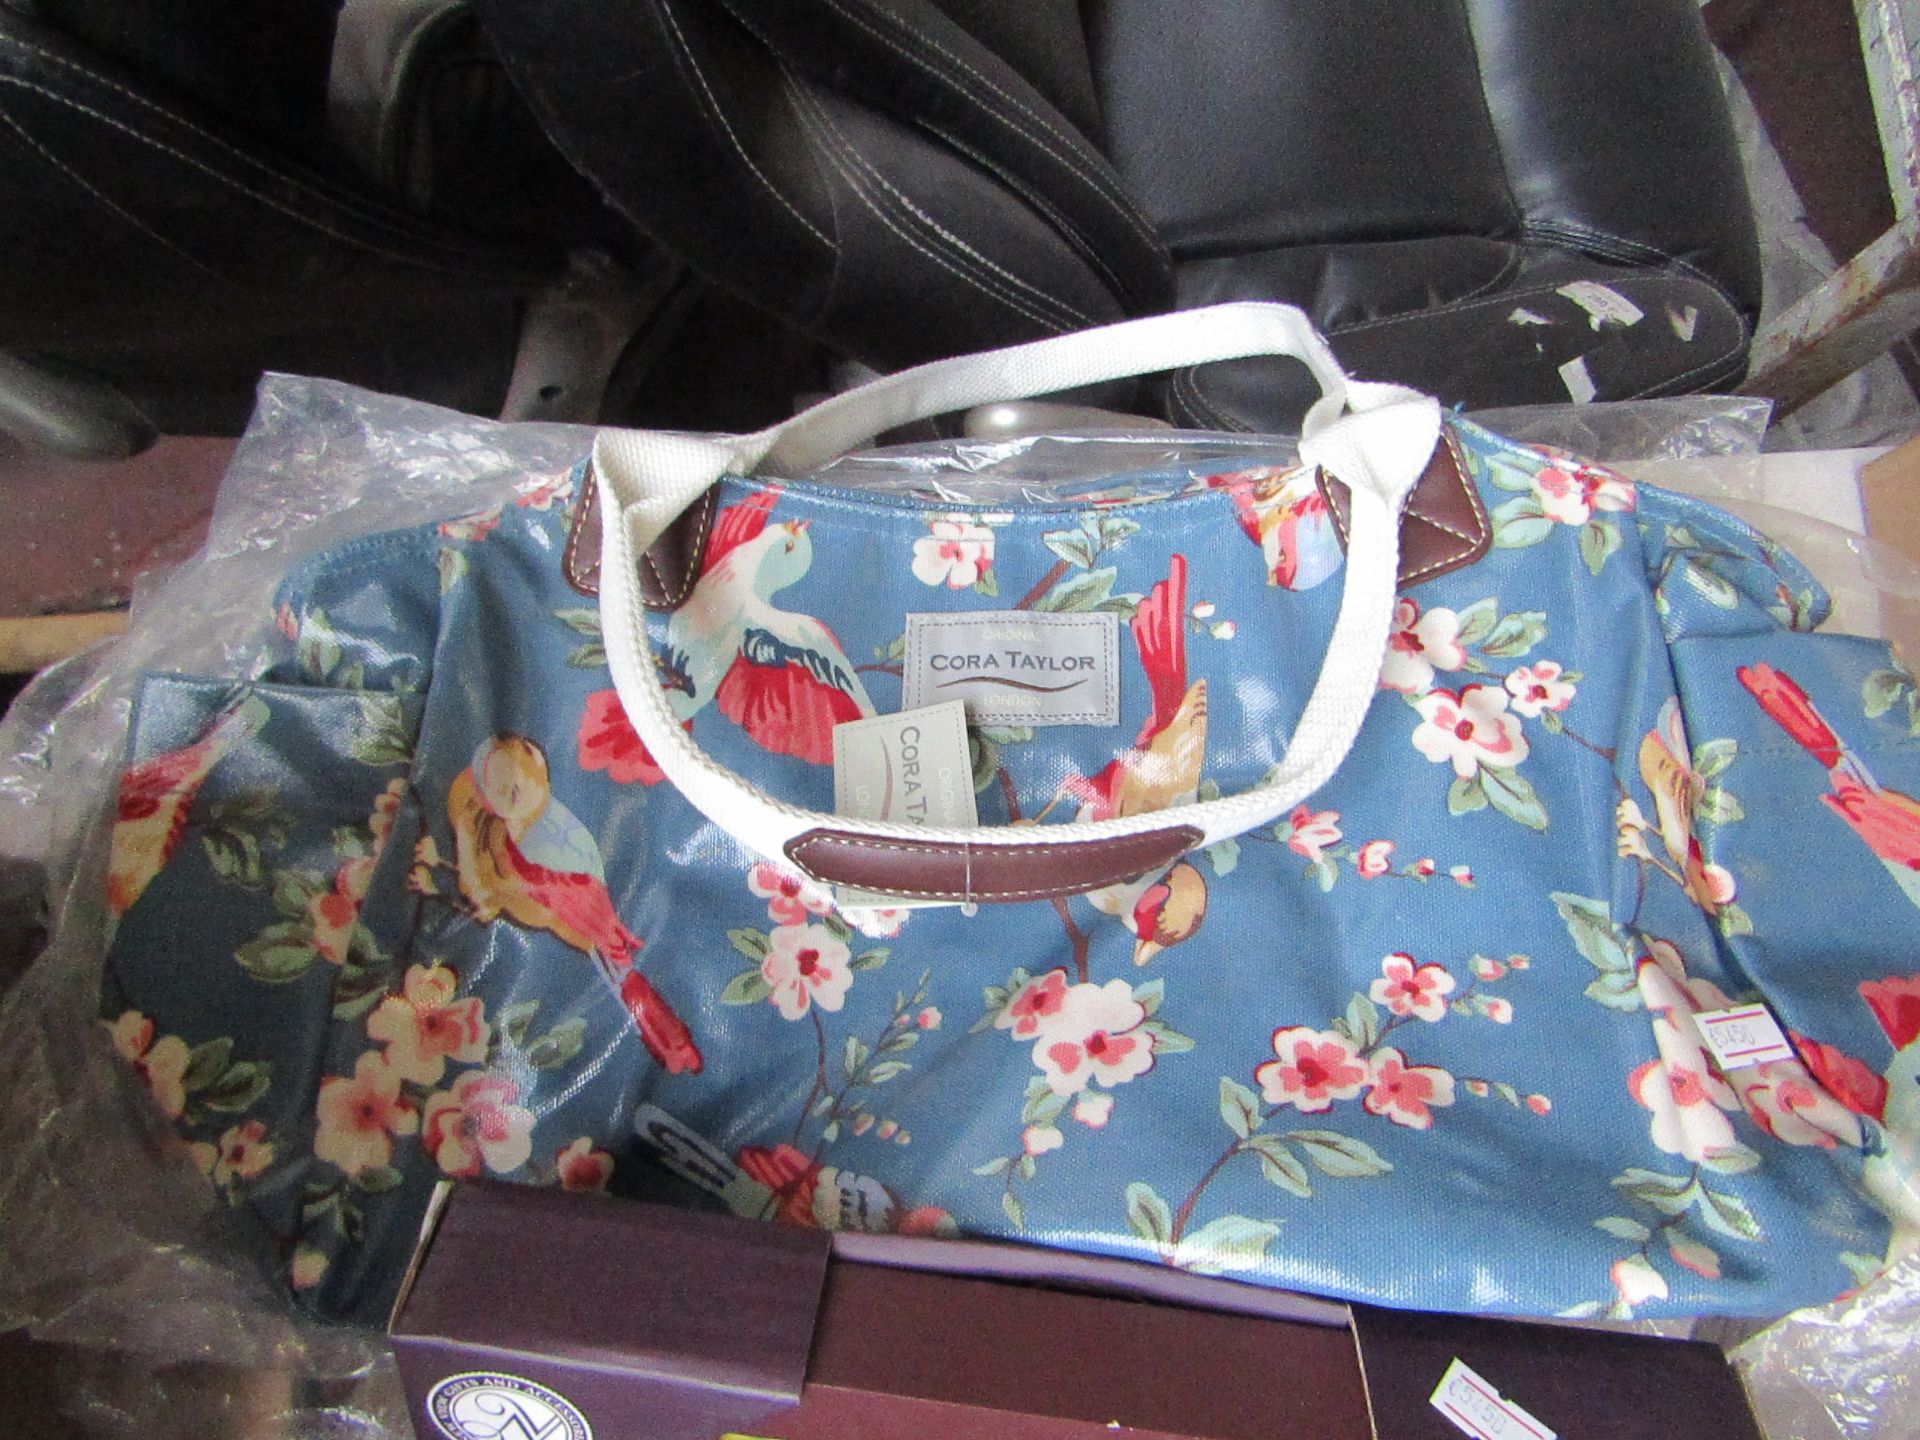 Cora Taylor London handbag, new with tag.